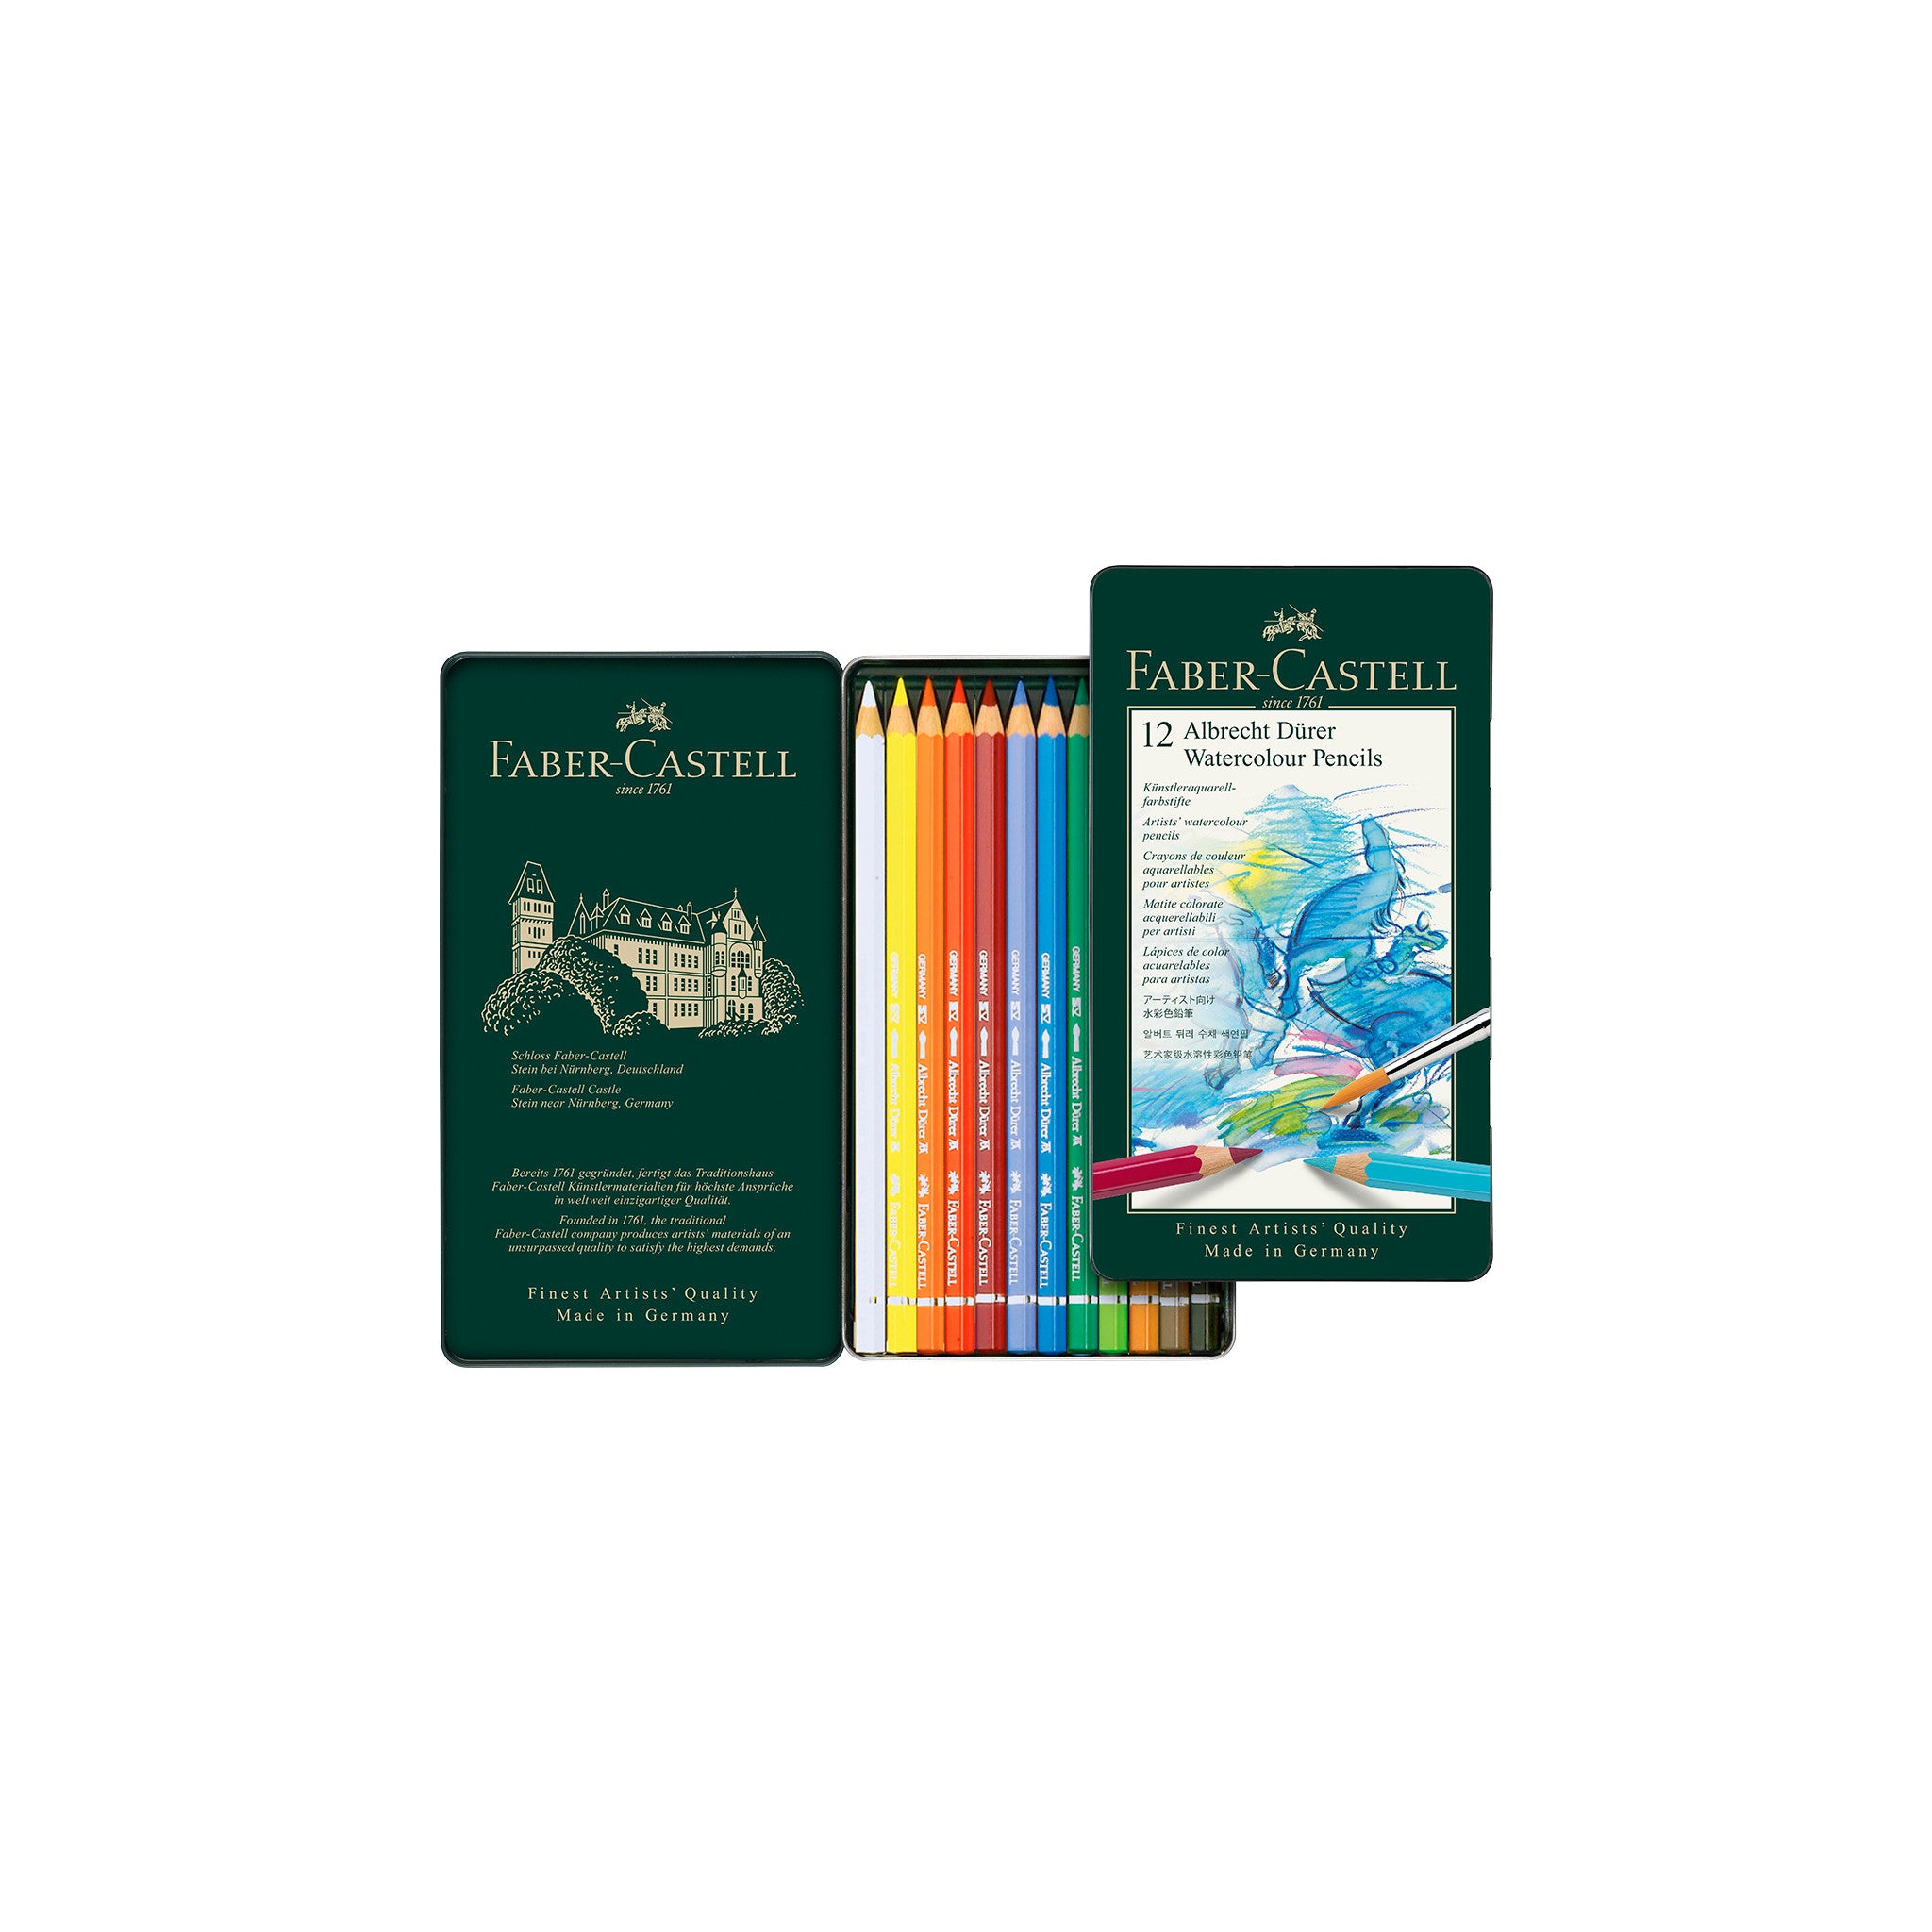 Crayons de couleur pour Adultes de Diamond Hobbies